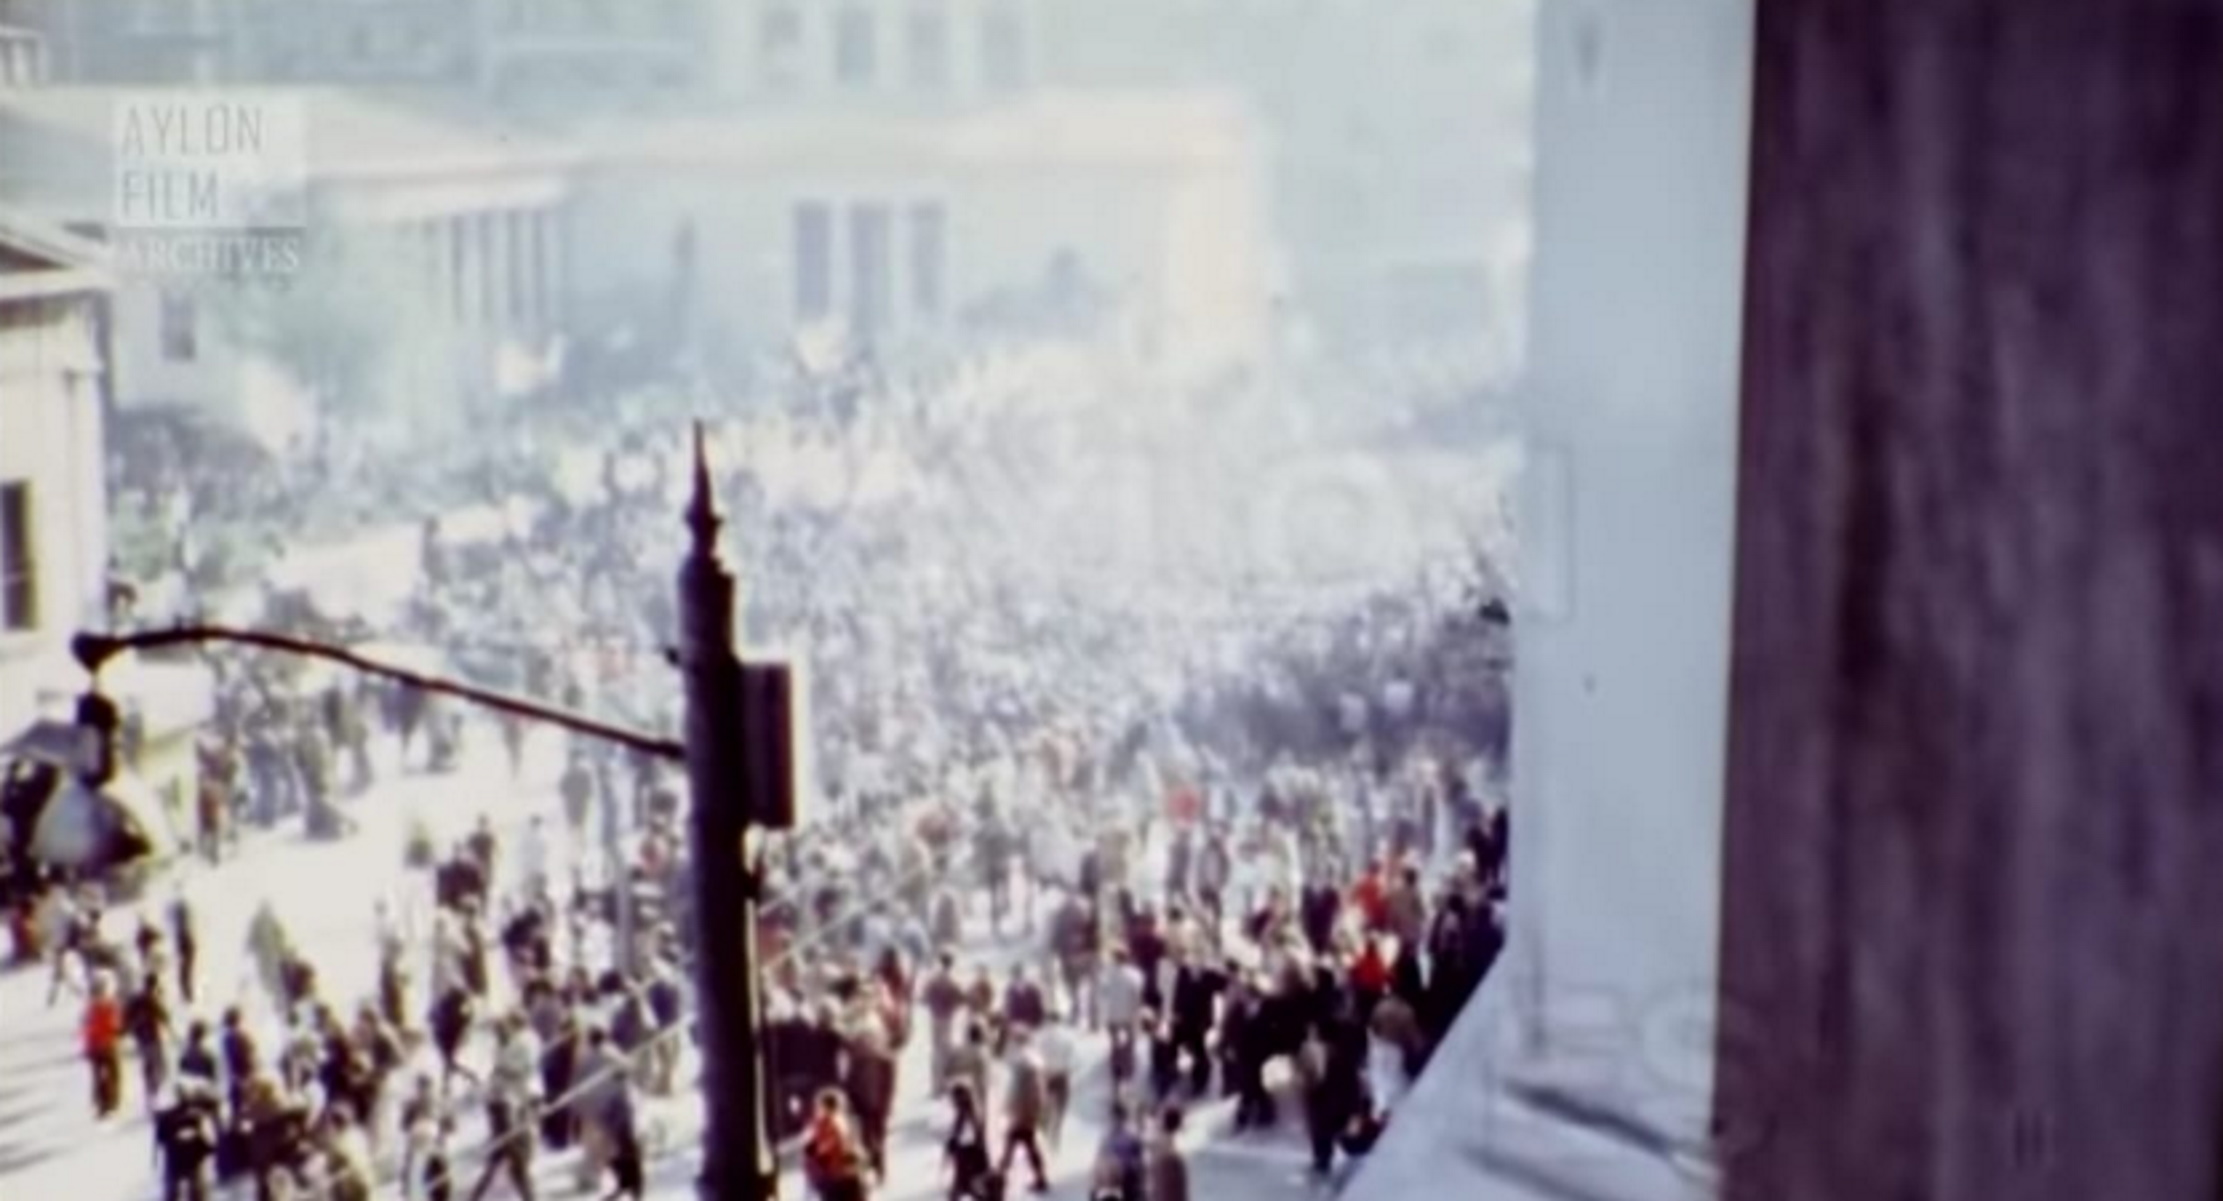 Πολυτεχνείο: Στη δημοσιότητα έγχρωμο φιλμ που απαθανάτισε την εξέγερση της 17ης Νοέμβρη 1973